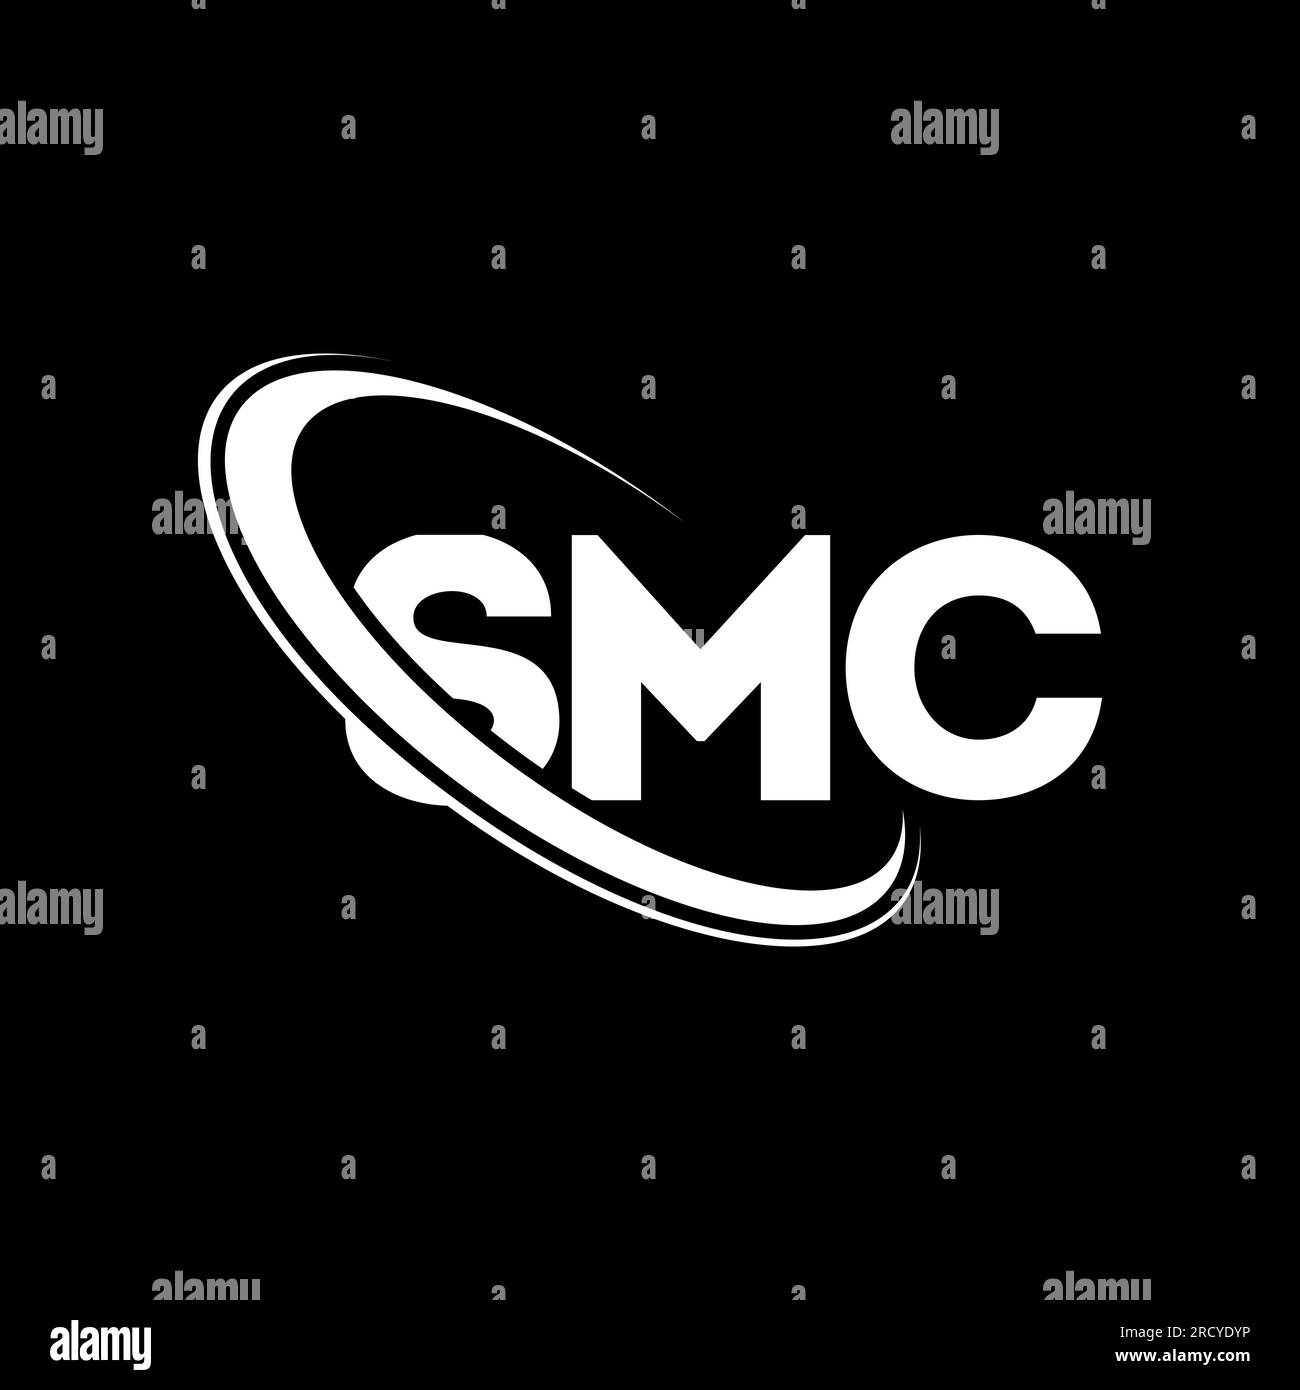 SMC-Logo. SMC-Brief. SMC-Logo. Initialen SMC-Logo, verbunden mit einem Kreis und einem Monogramm-Logo in Großbuchstaben. SMC-Typografie für Technologie, Unternehmen Stock Vektor